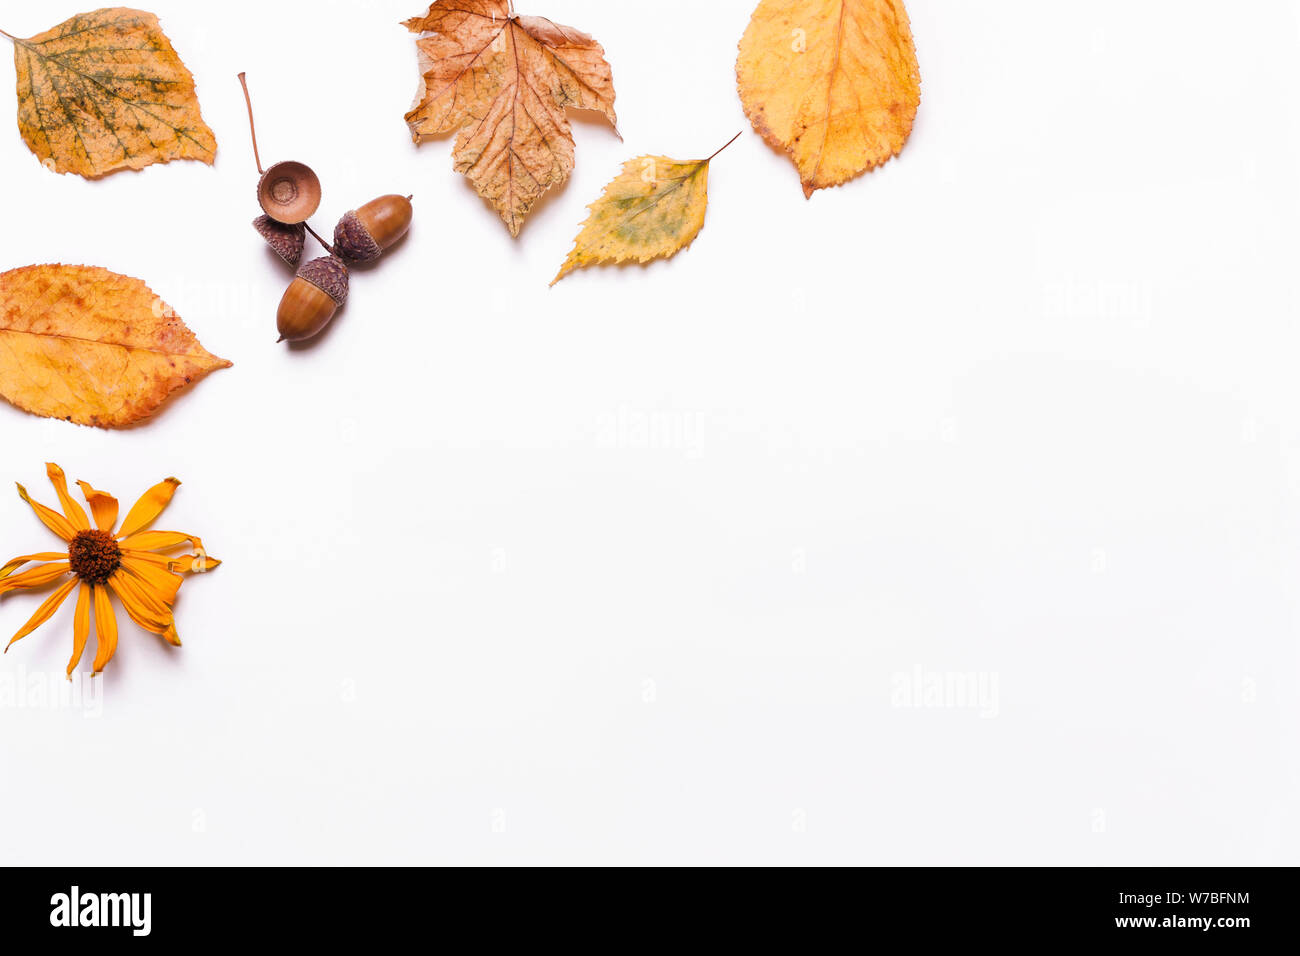 Creative sfondo giallo di foglie secche, acorn, noce, fiori. concetto di autunno. Vista superiore, piatto Foto Stock